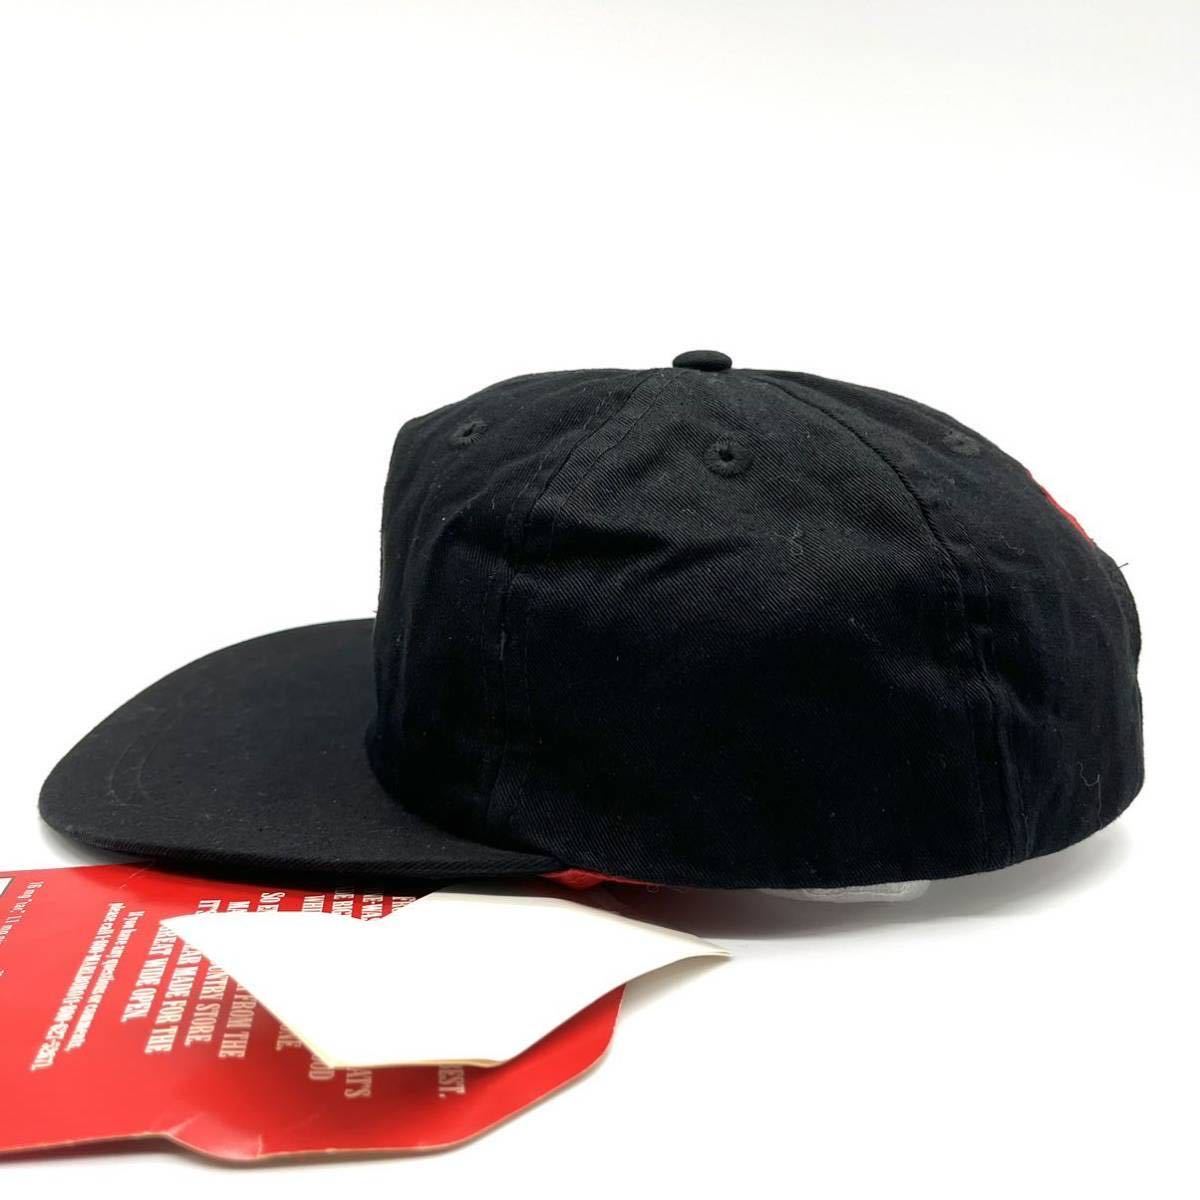 【デッドストック】90s MARLBORO(マルボロ) 刺繍ロゴキャップ 黒 レザーベルトバック 企業ロゴ タバコ オフィシャル当時物 ビンテージ 帽子